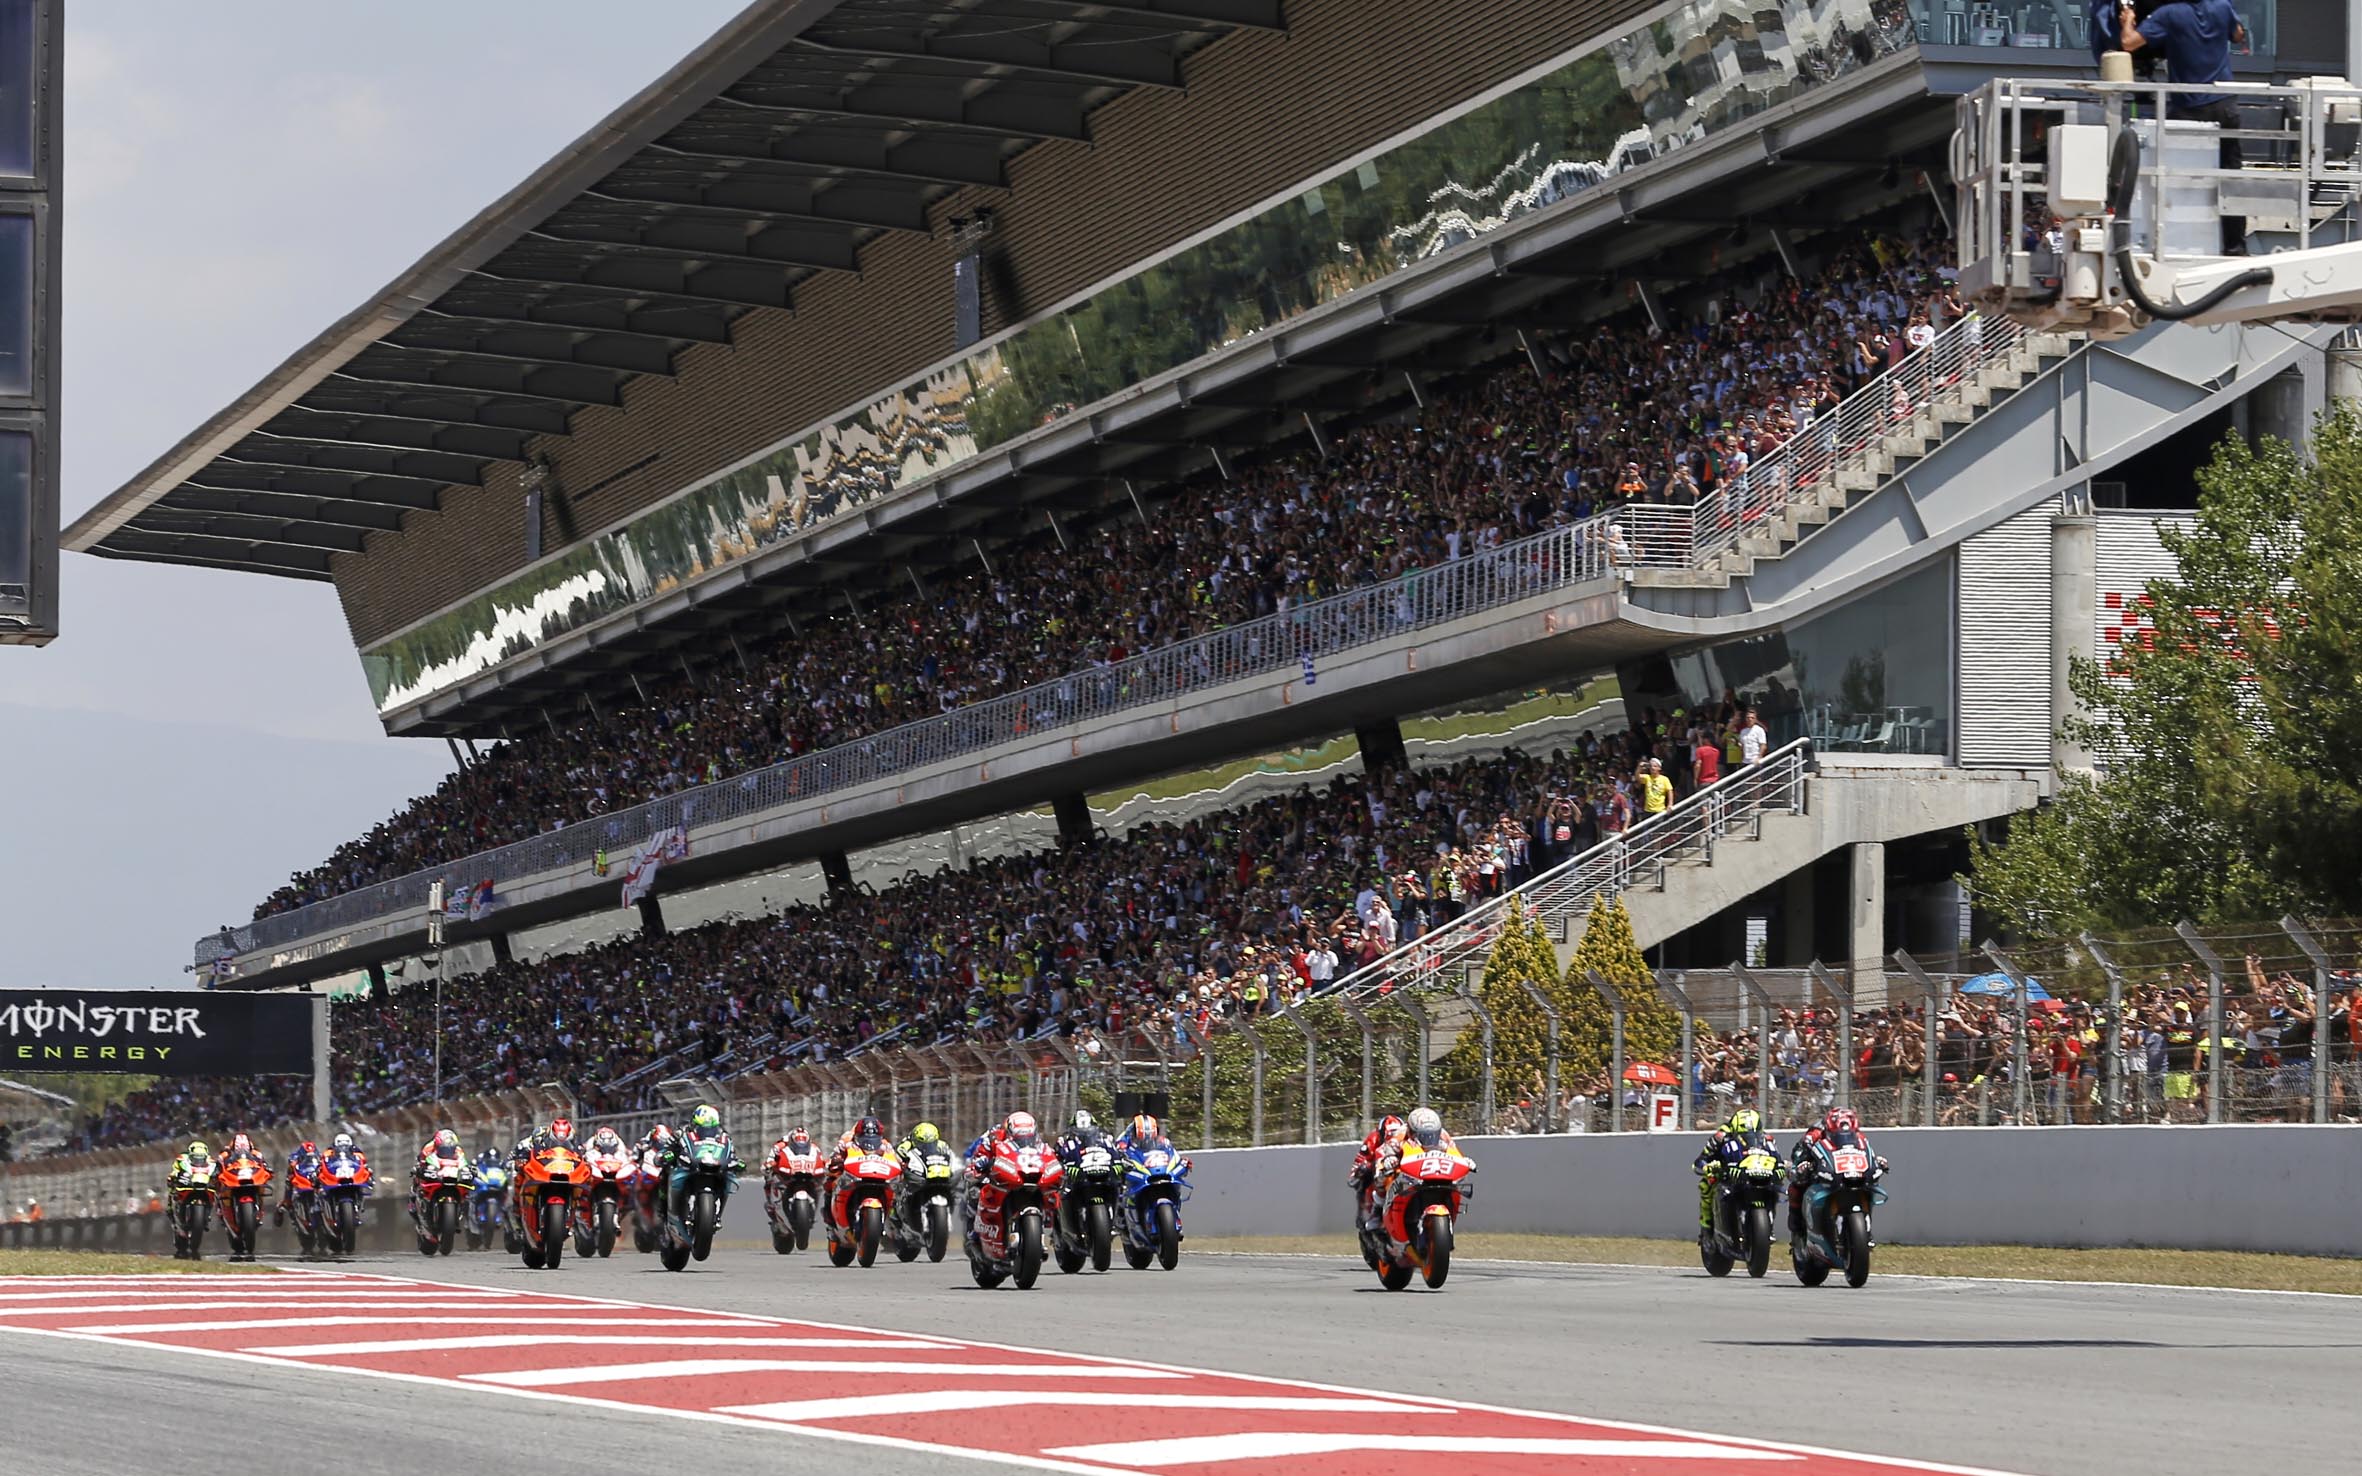 Una imatge de l'anterior Gran Premi de MotoGP al Circuit de Barcelona-Catalunya a Montmeló